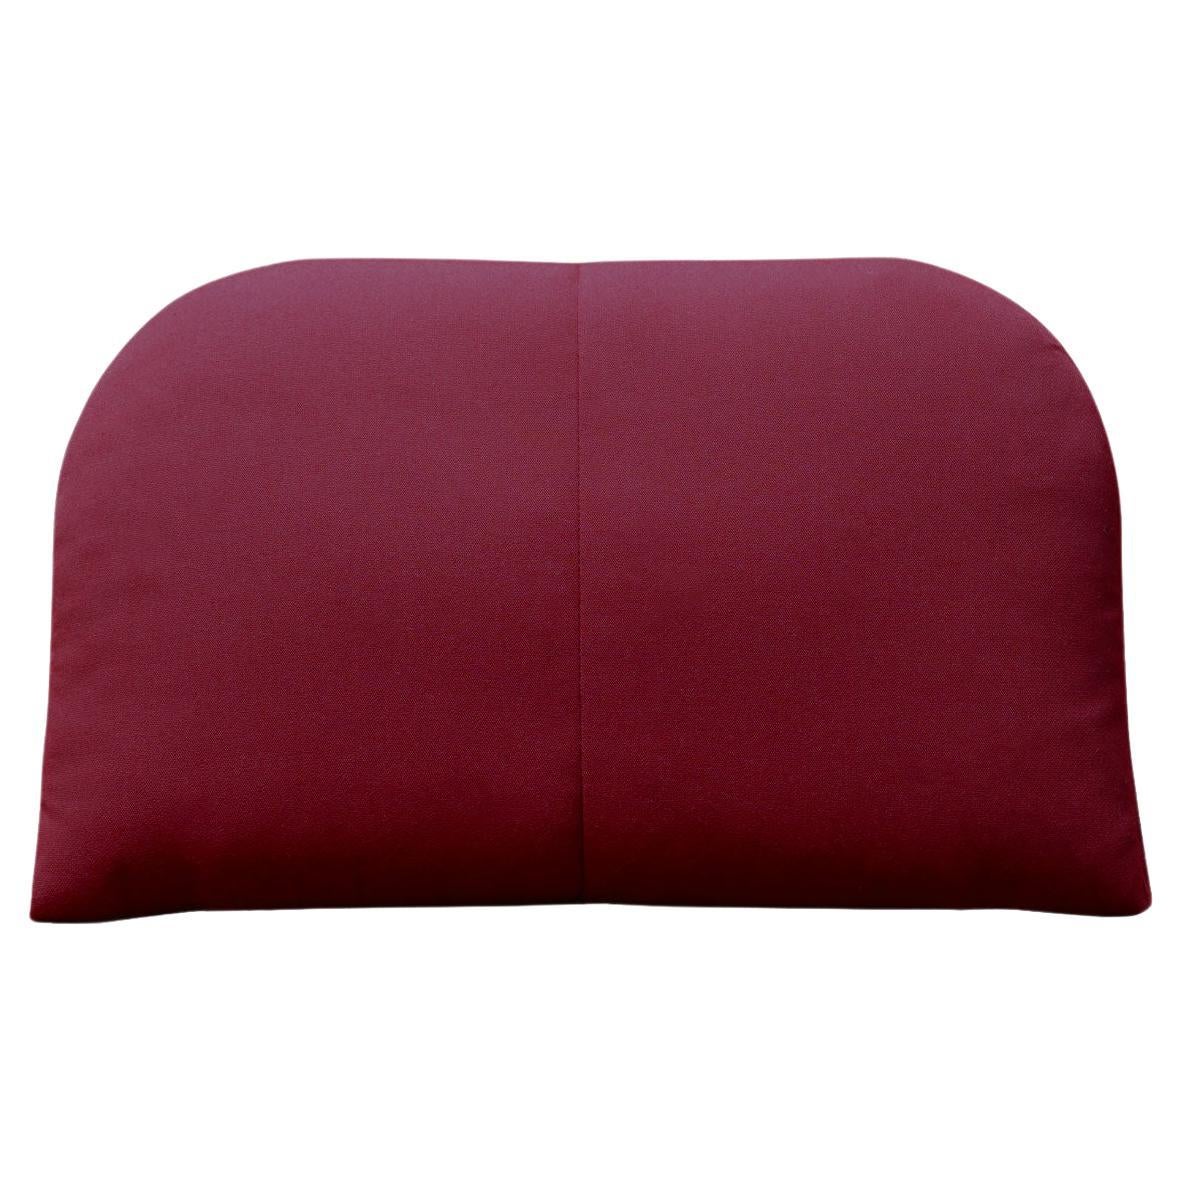 Bend Goods - Arc Throw Pillow in Burgundy Sunbrella